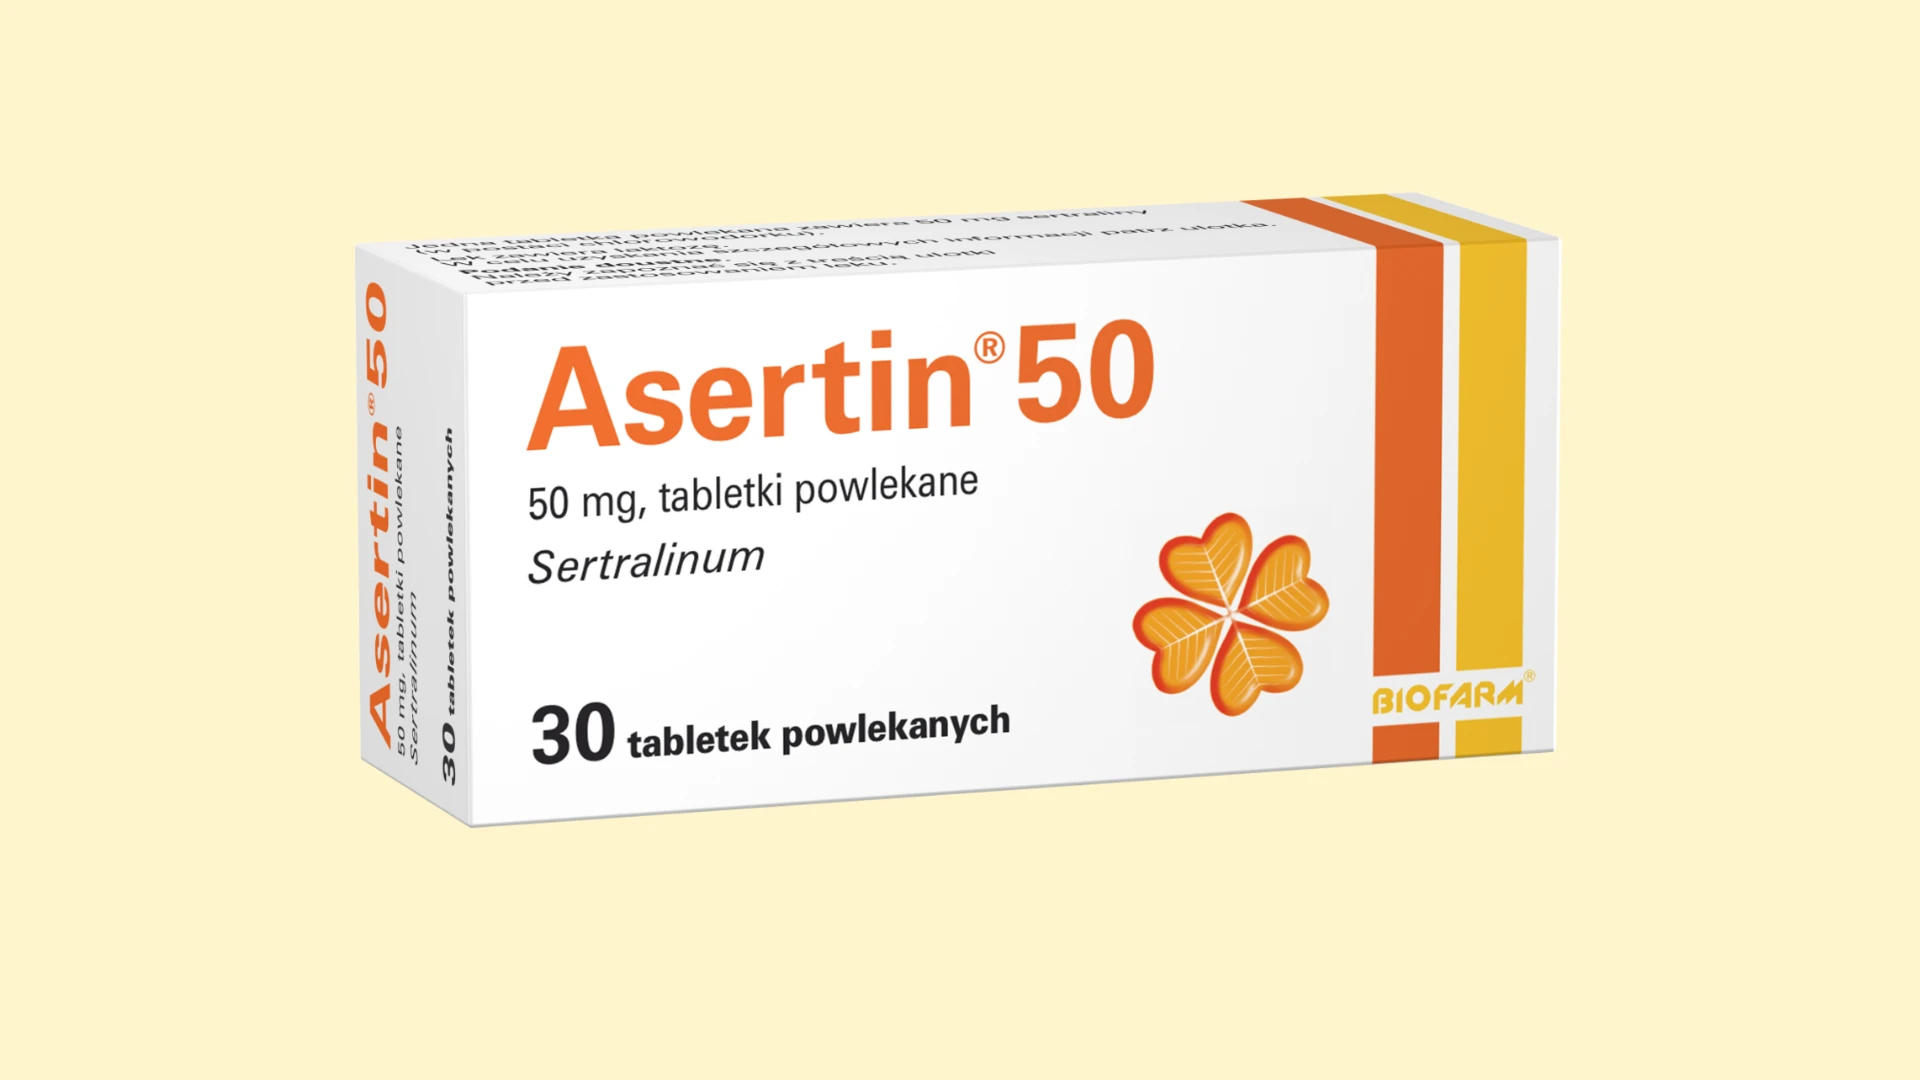 Asertin 50 - Recepta online - e-Recepta z konsultacją | cena, dawkowanie, przeciwwskazania